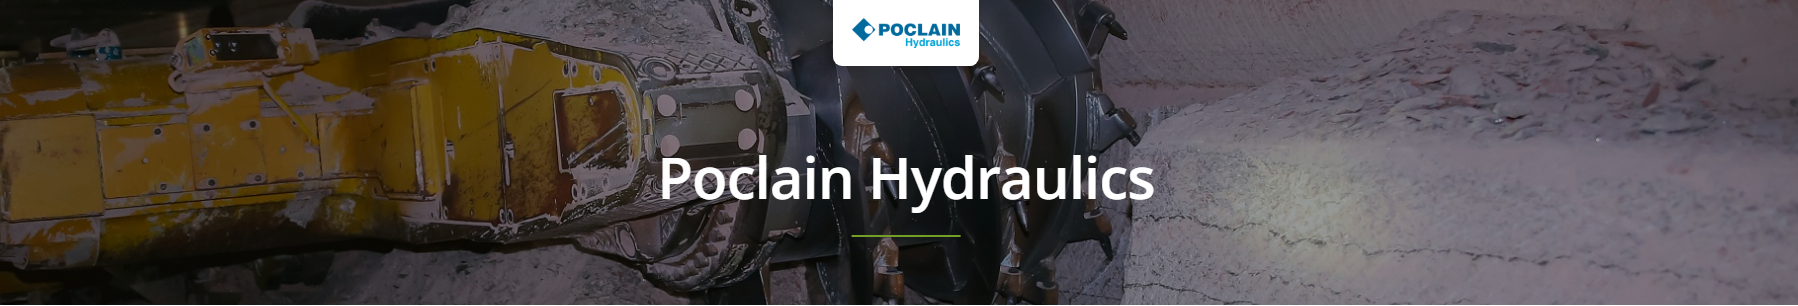 Poclain Hydraulics Motors